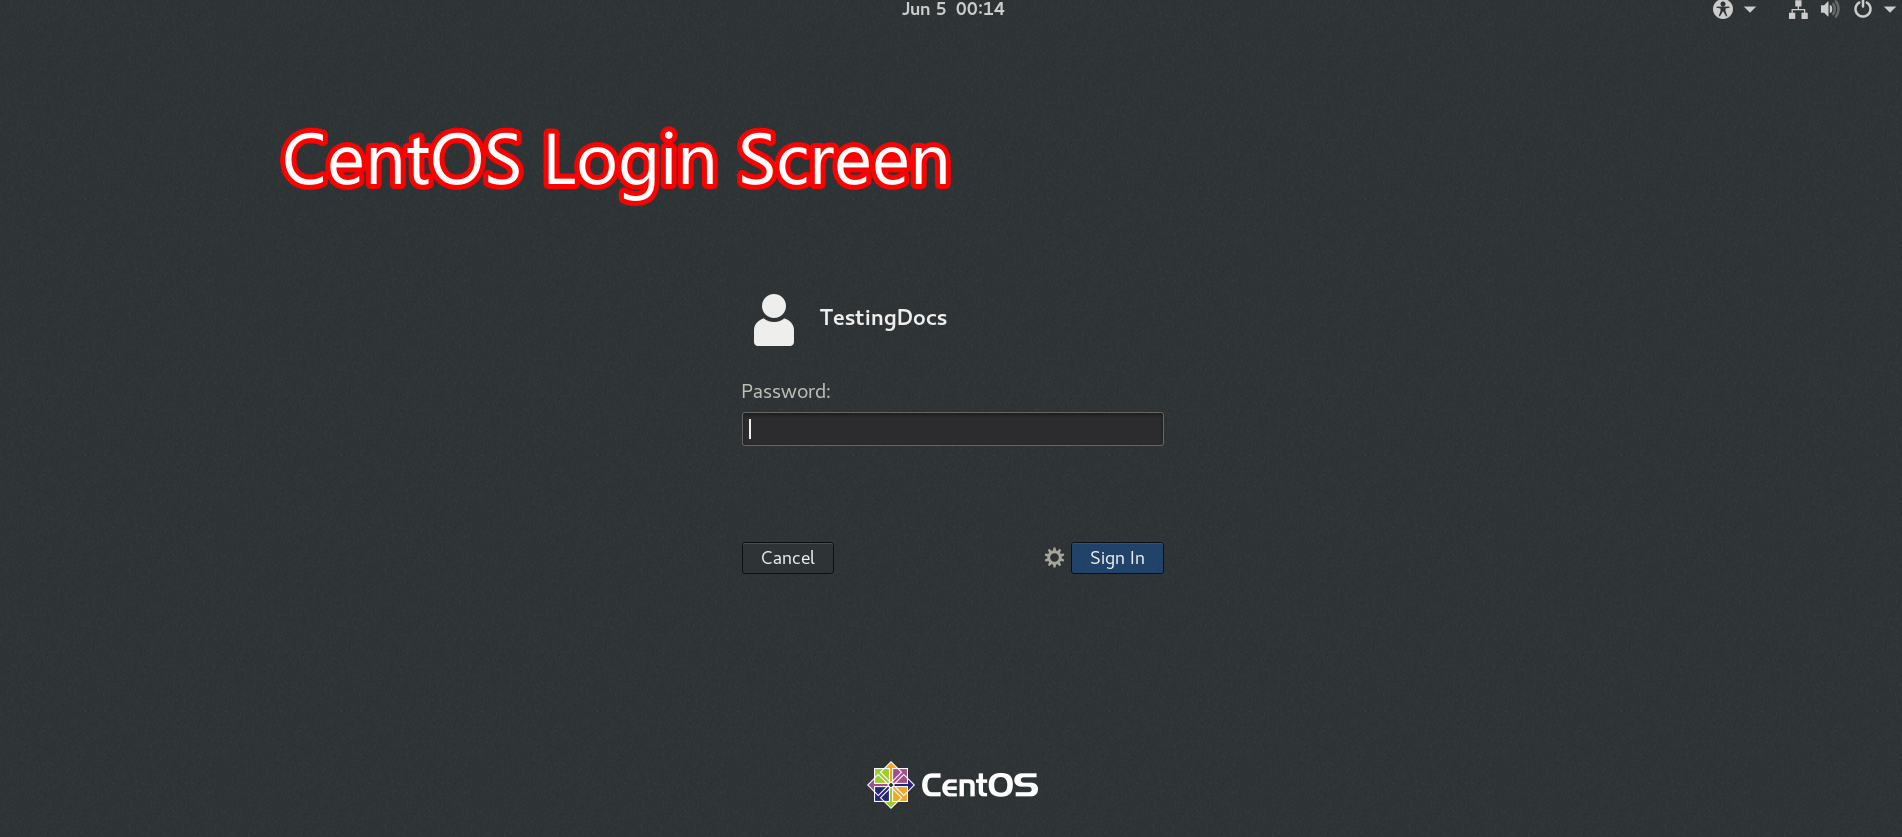 CentOS Login Screen